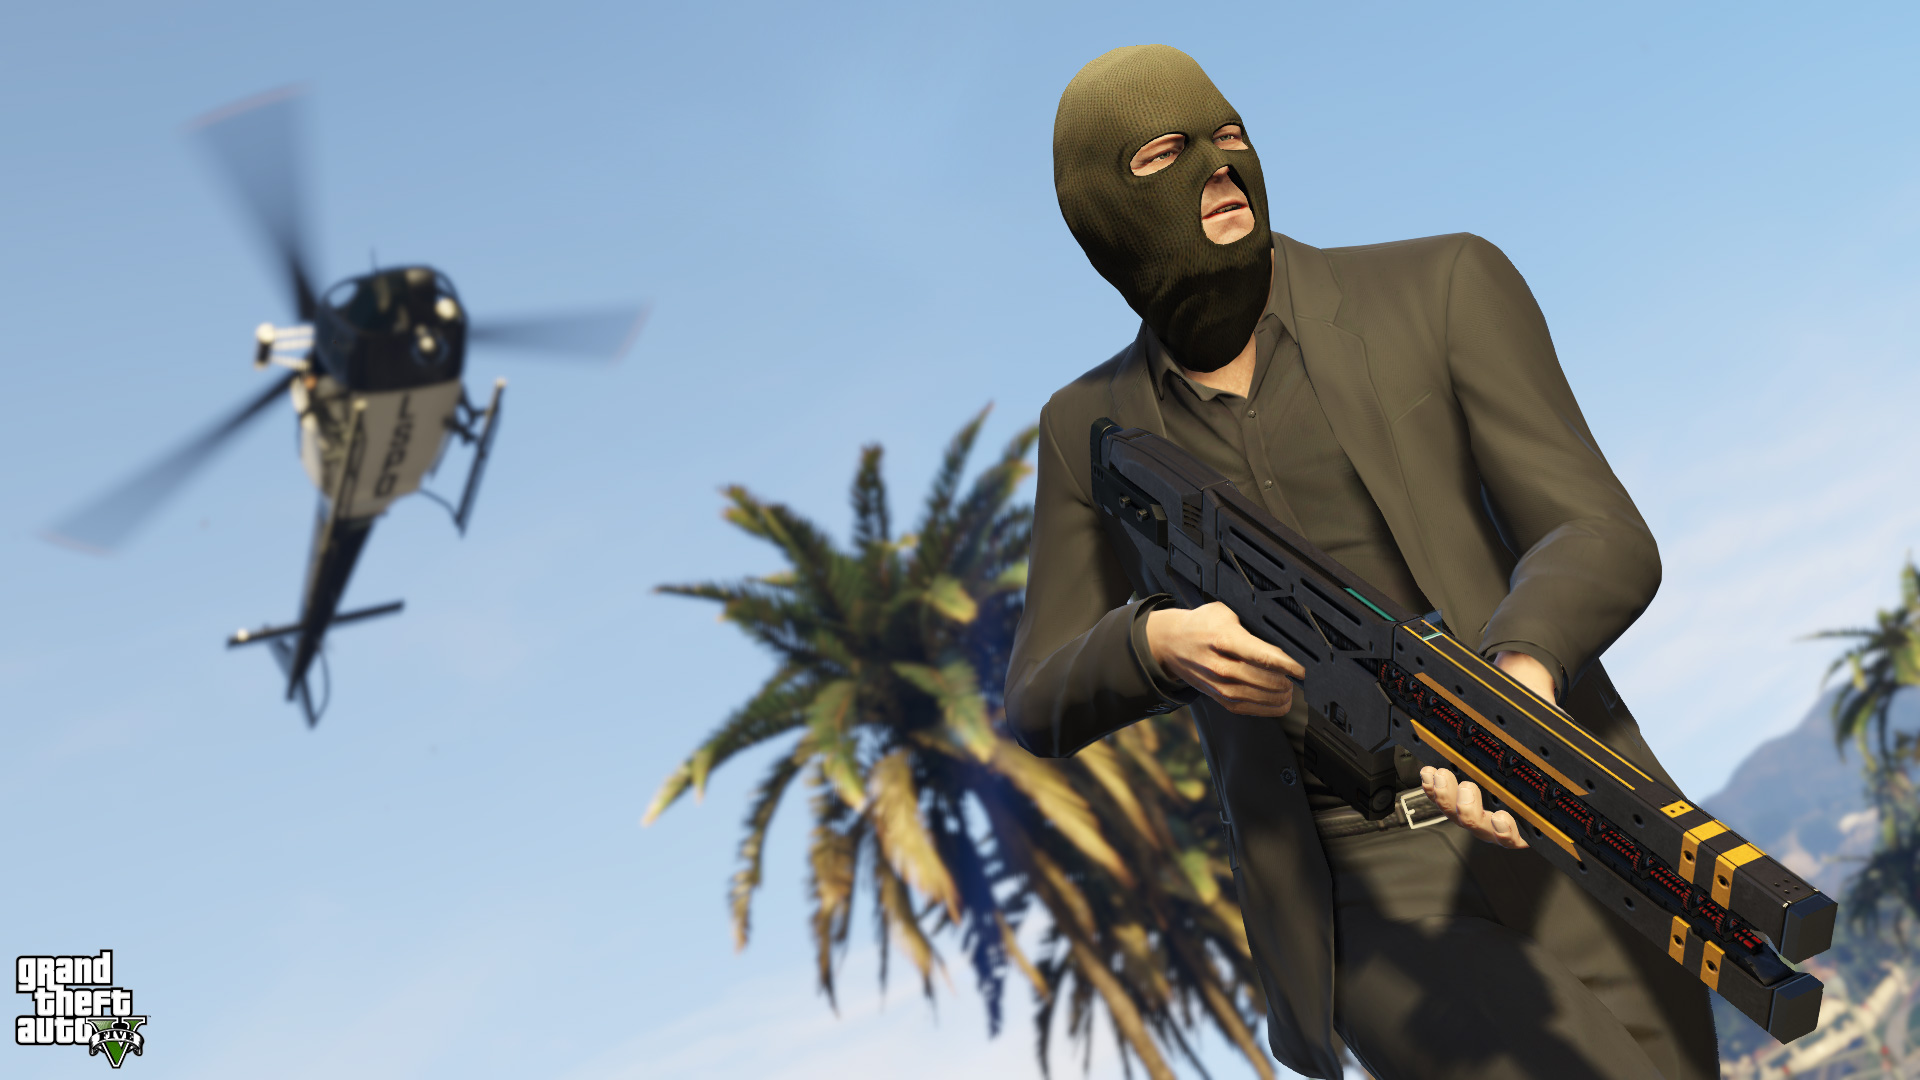 Immagine pubblicata in relazione al seguente contenuto: Rockstar pubblica nuove info e screenshots di Grand Theft Auto V | Nome immagine: news21805_Grand-Theft-Auto-V_4.jpg